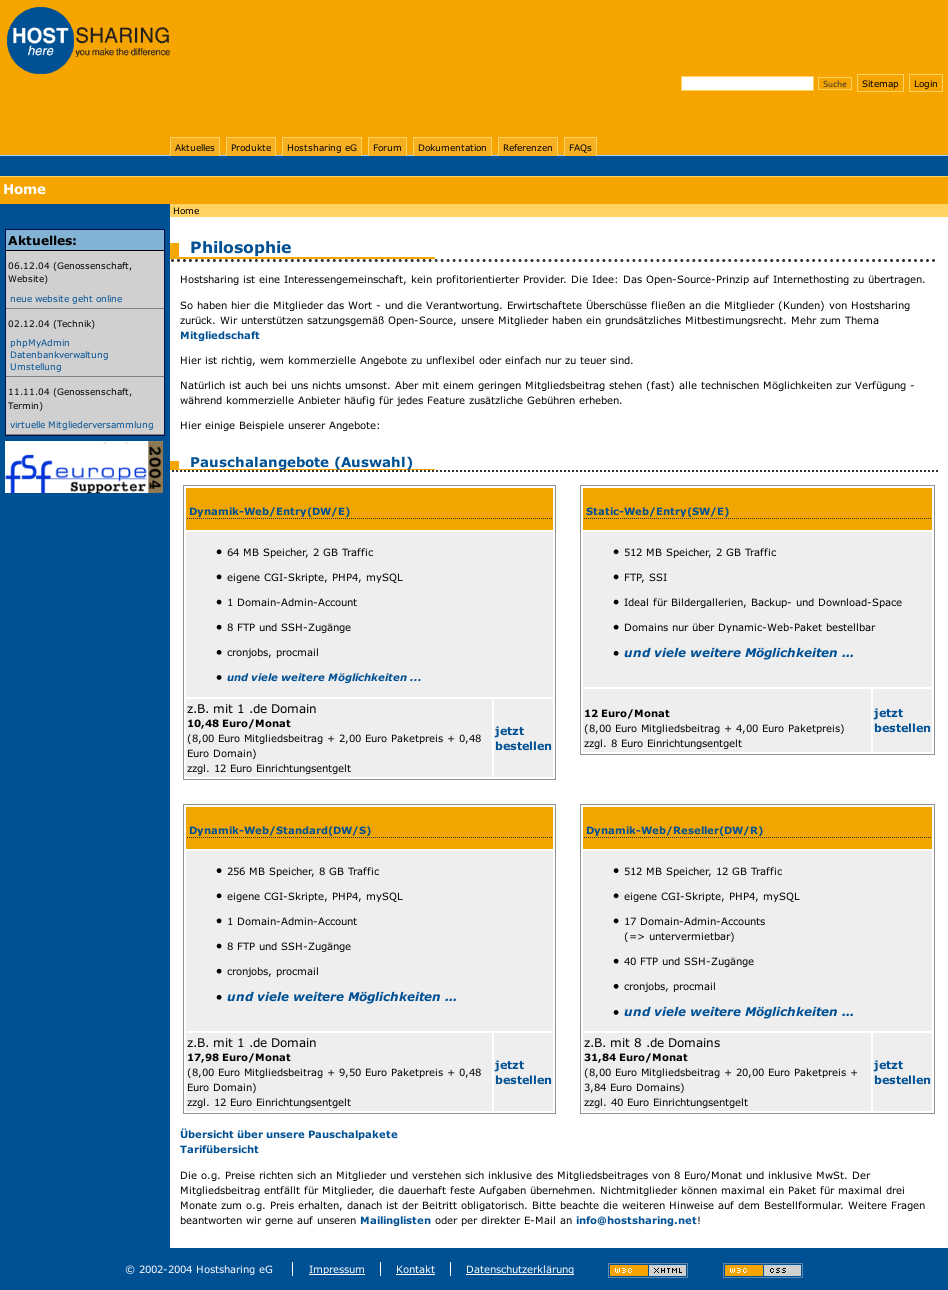 Screenshot einer Website in einem Design mit blauen und gelben Flächen.